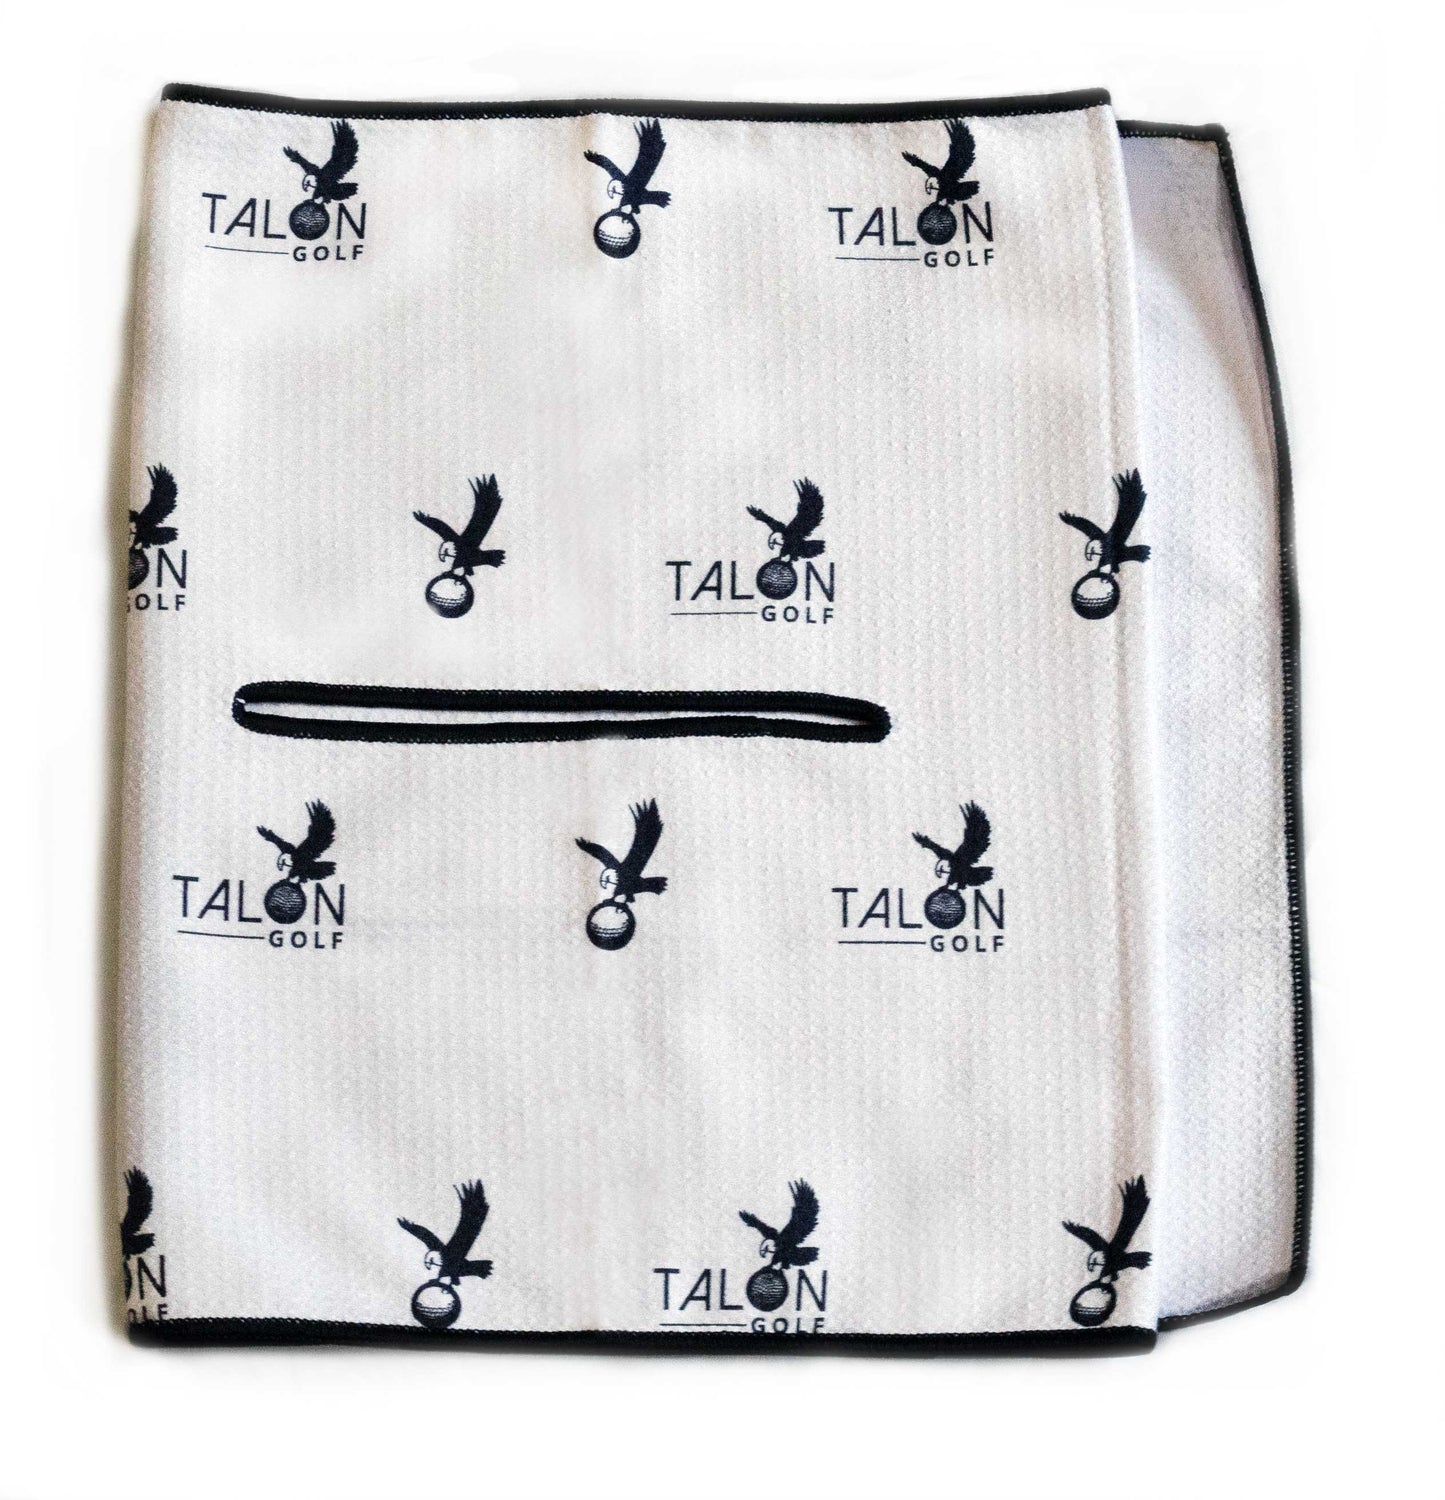 Talon Golf Towels by Talon Golf LLC